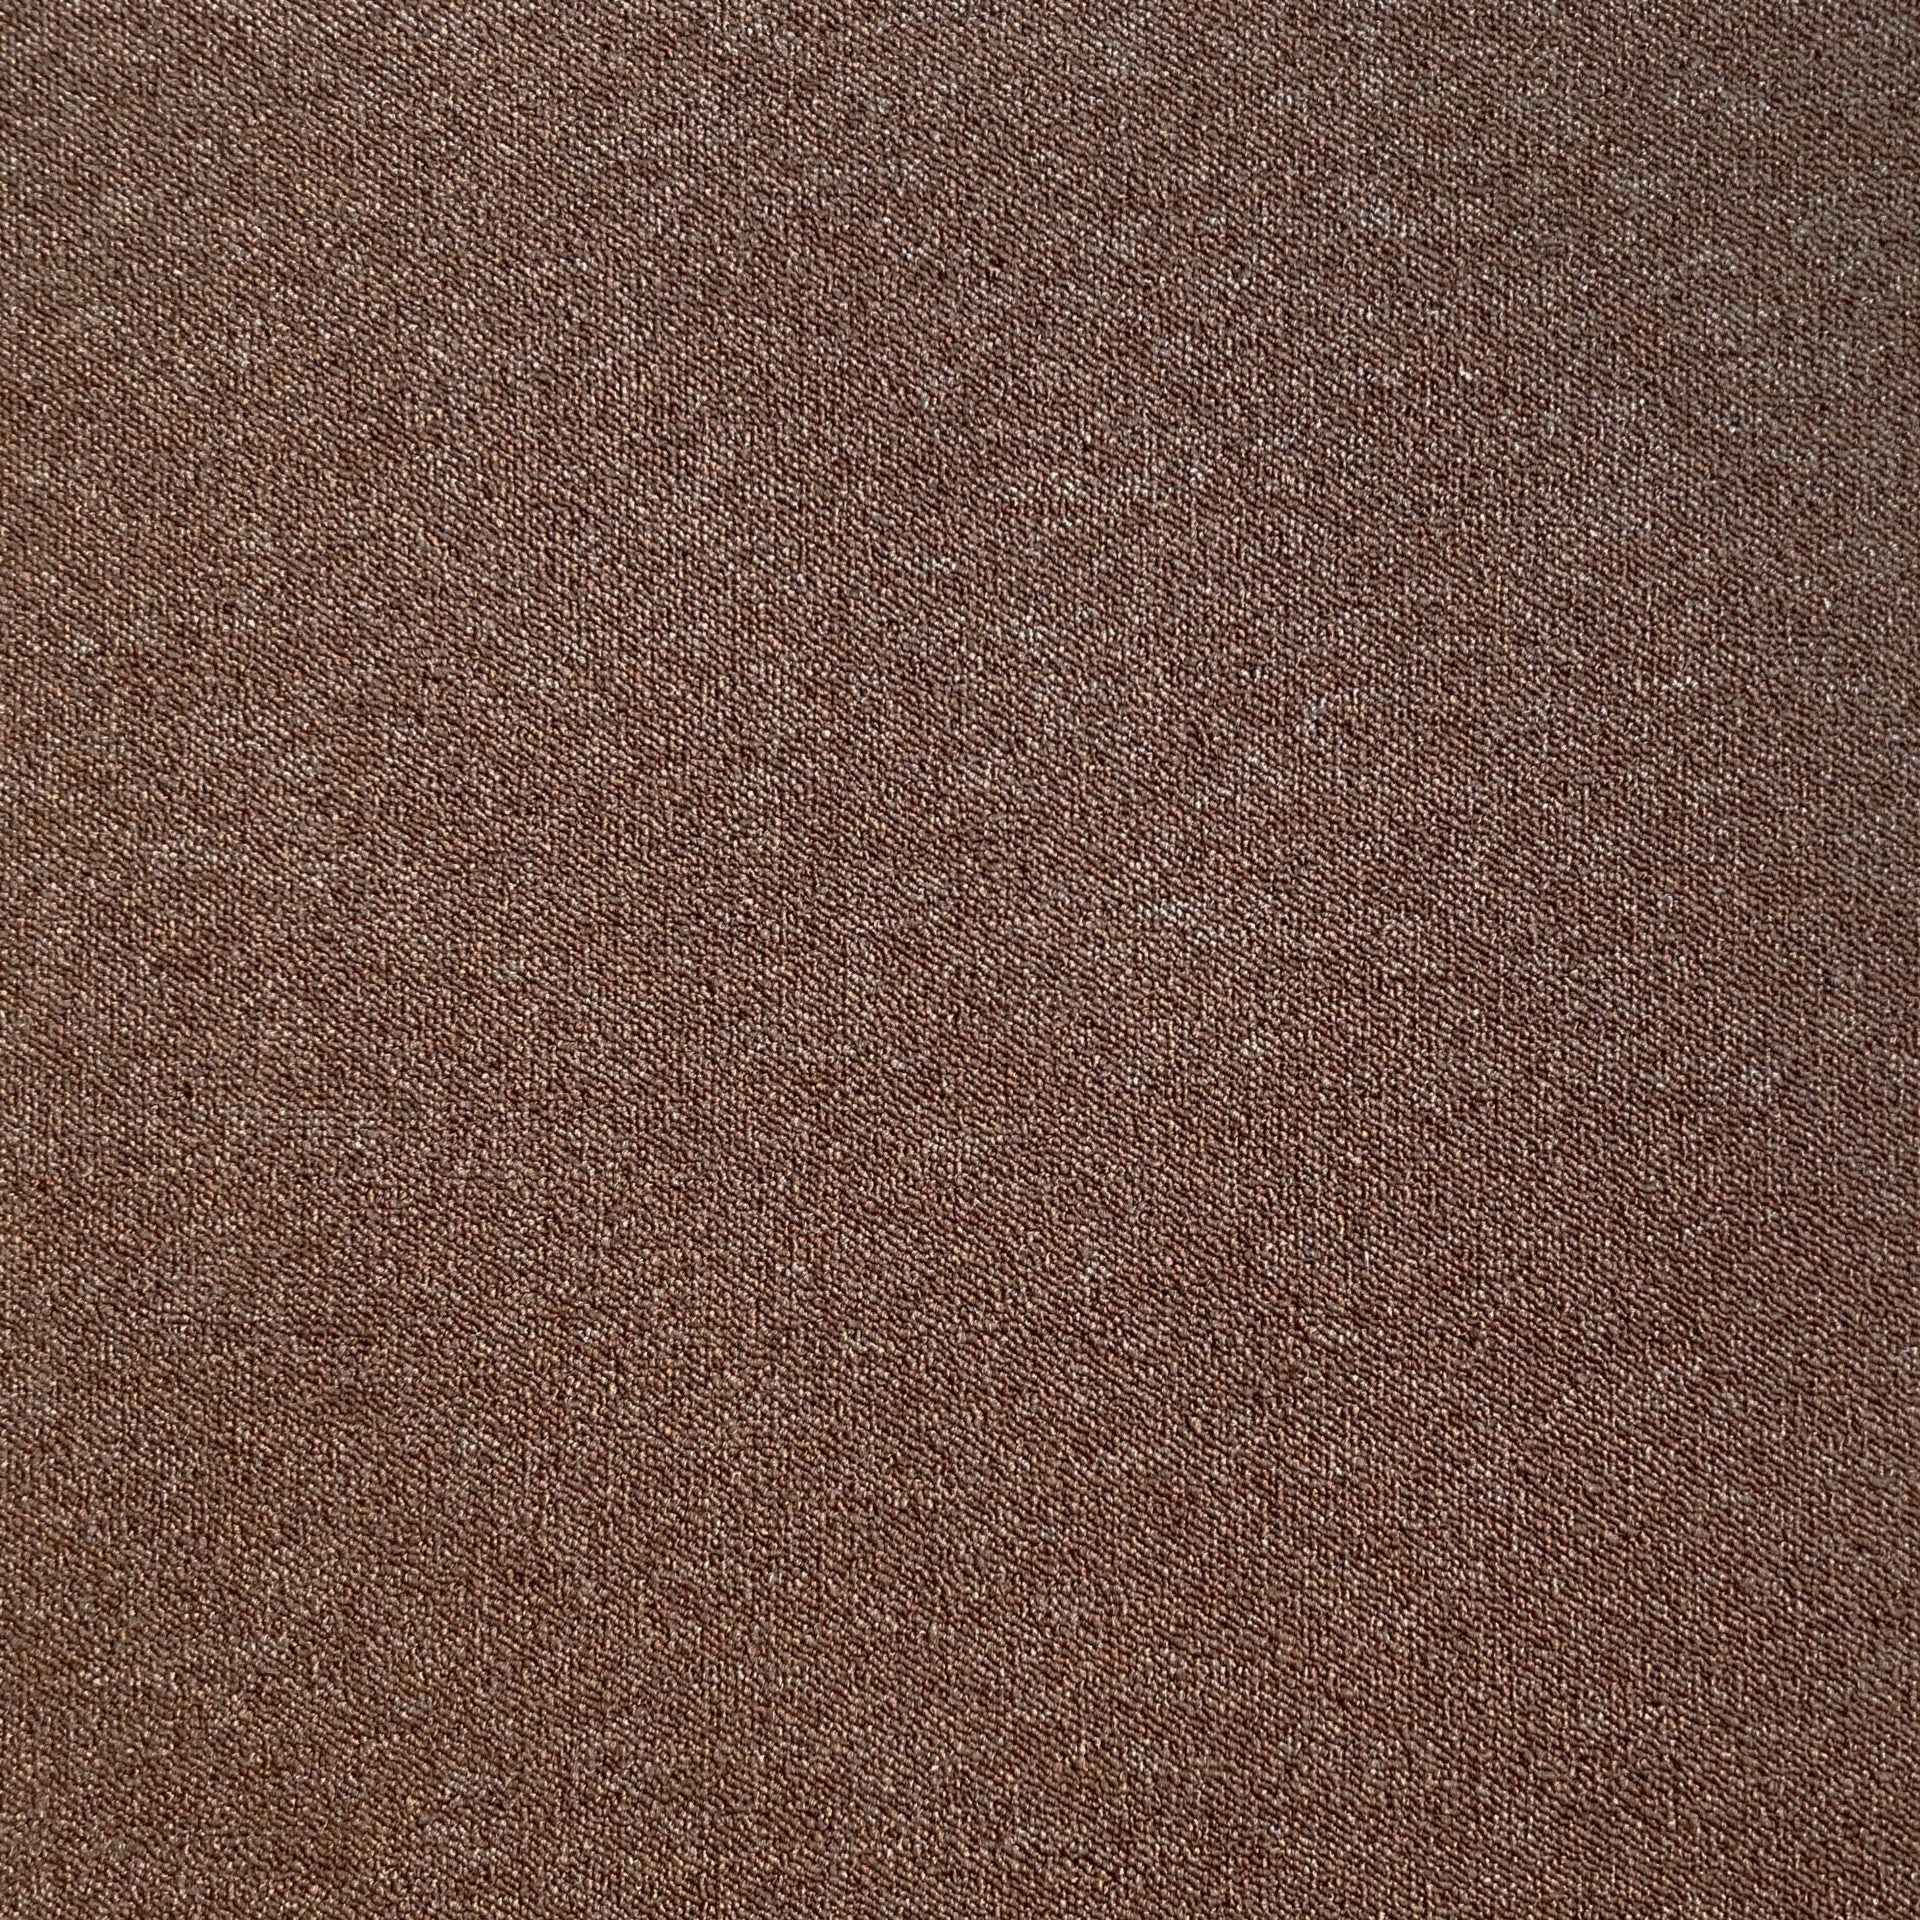 SIERRA TILE 97 - 50x50 cm